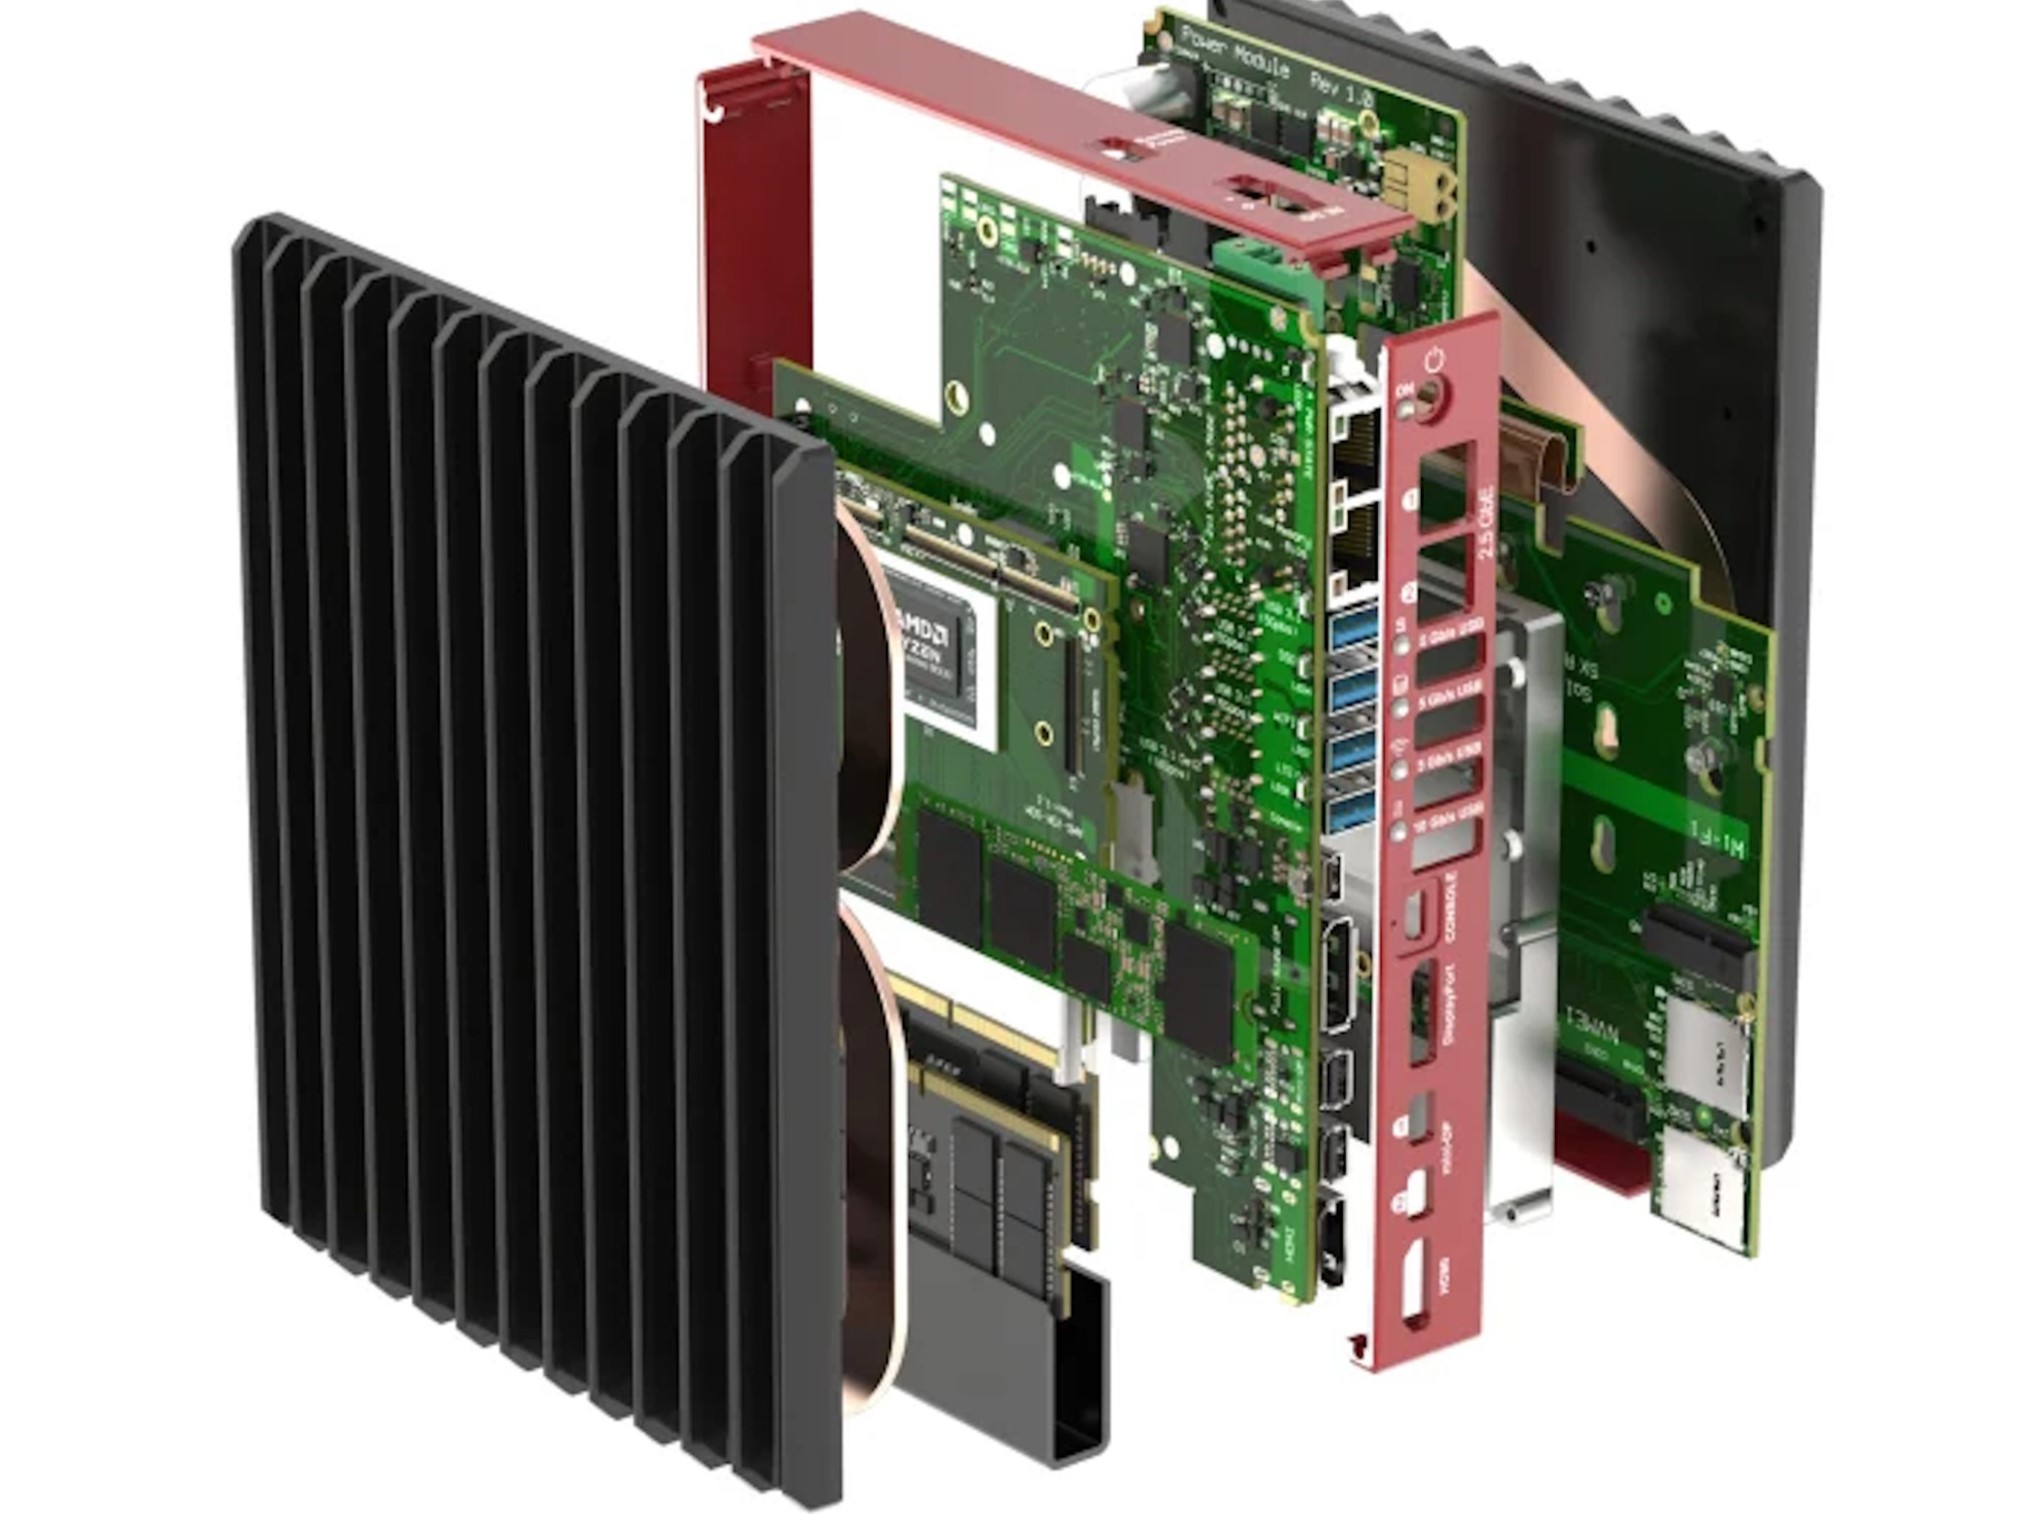 Bedrock R8000: PC compacta con refrigeración pasiva que promete un gran rendimiento de IA a altas temperaturas gracias a Ryzen 8000